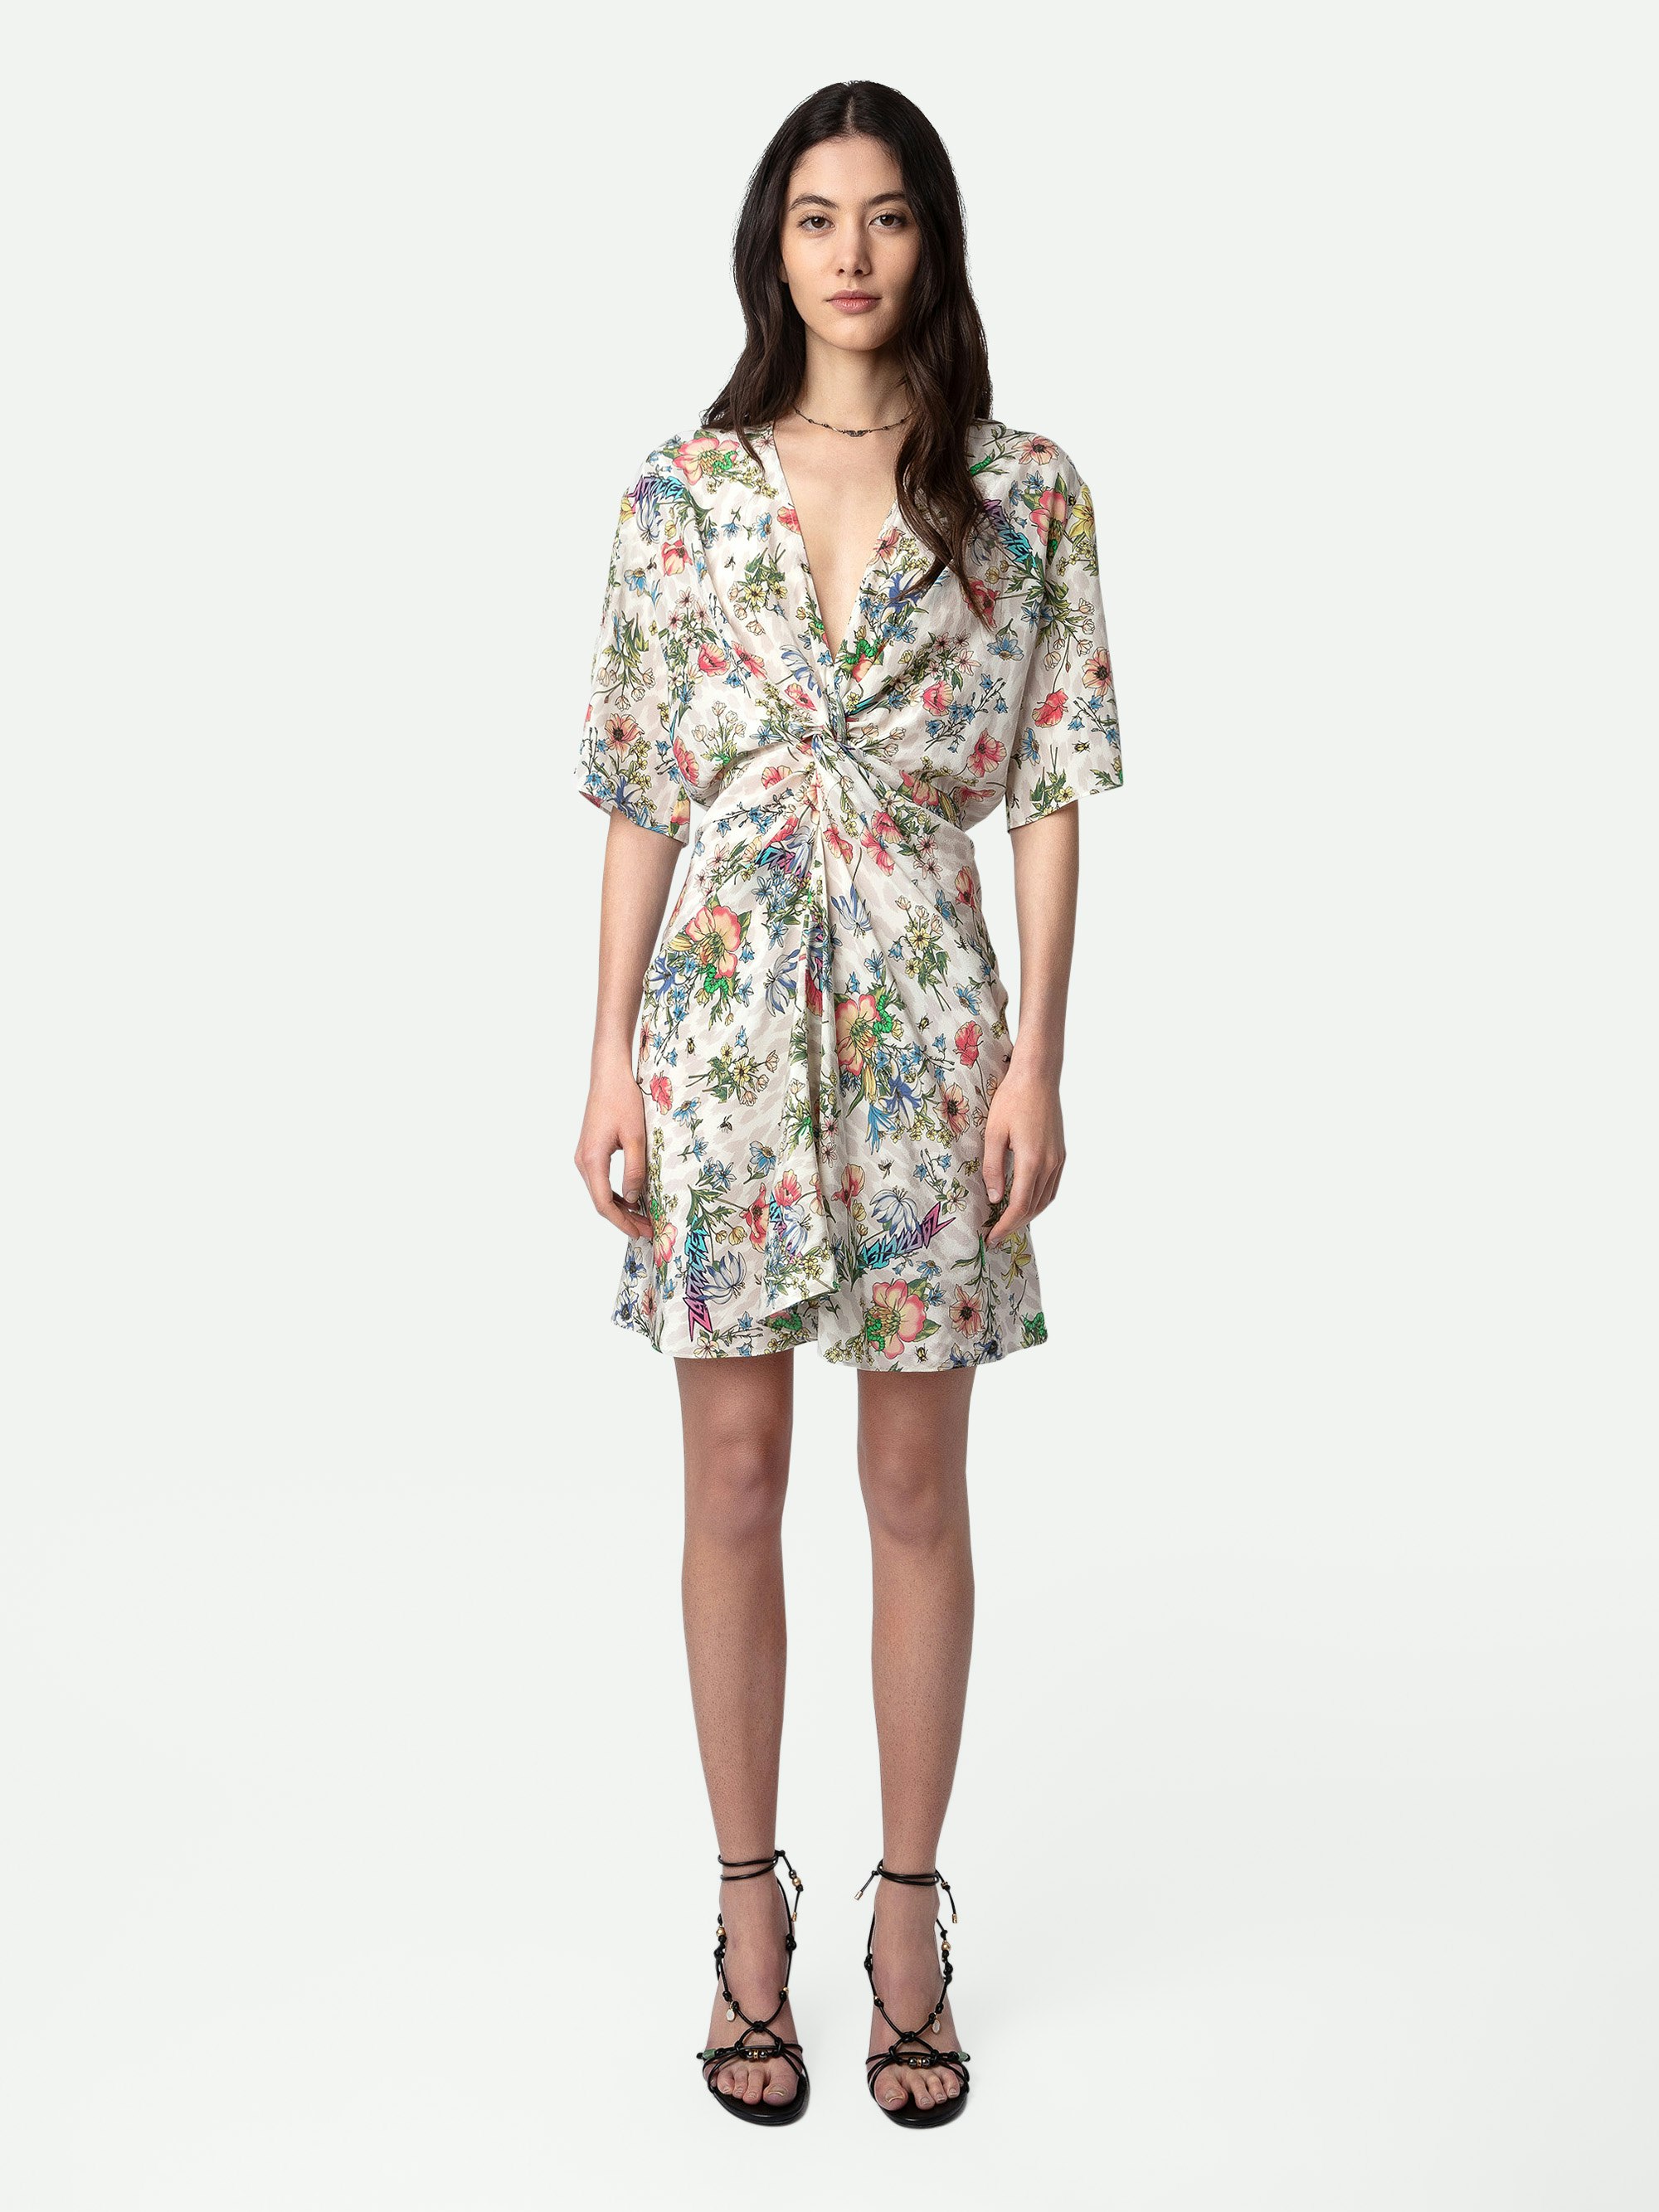 Kleid Rozom Seide - Kurzes, ecrufarbenes und an der Taille drapiertes Seidenkleid mit Twisted-Garden-Print und kurzen Ärmeln.